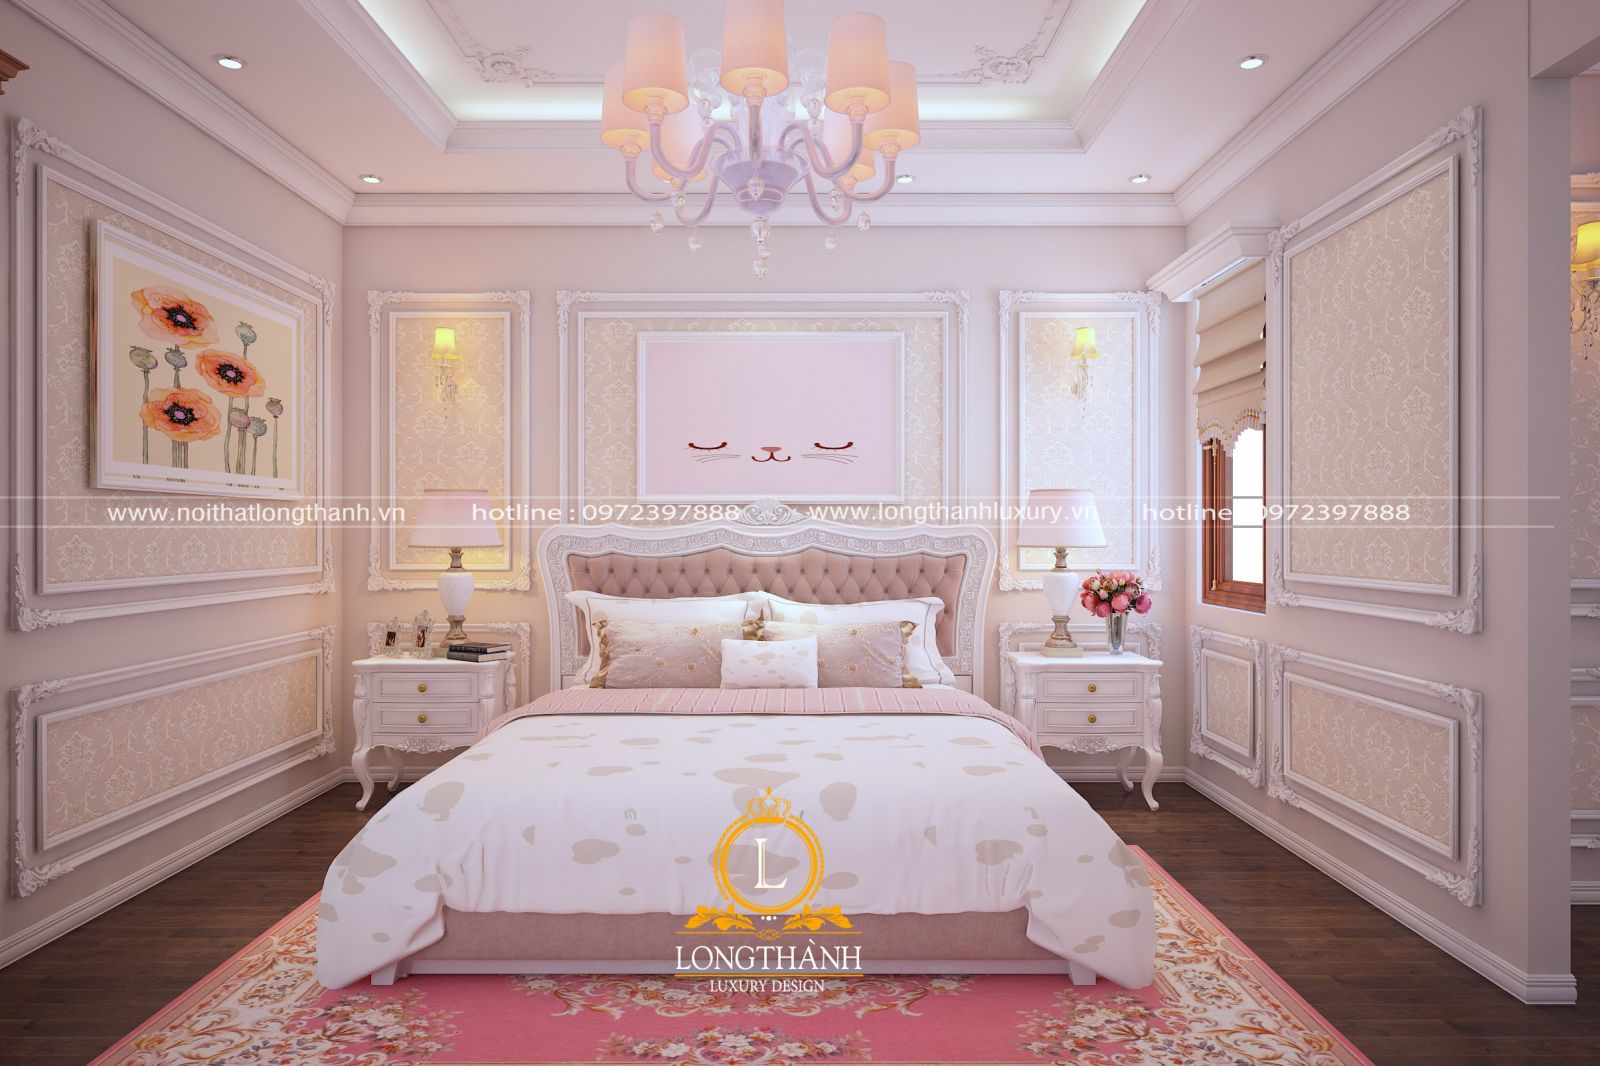 Phòng ngủ tân cổ điển với màu hồng làm chủ đạo